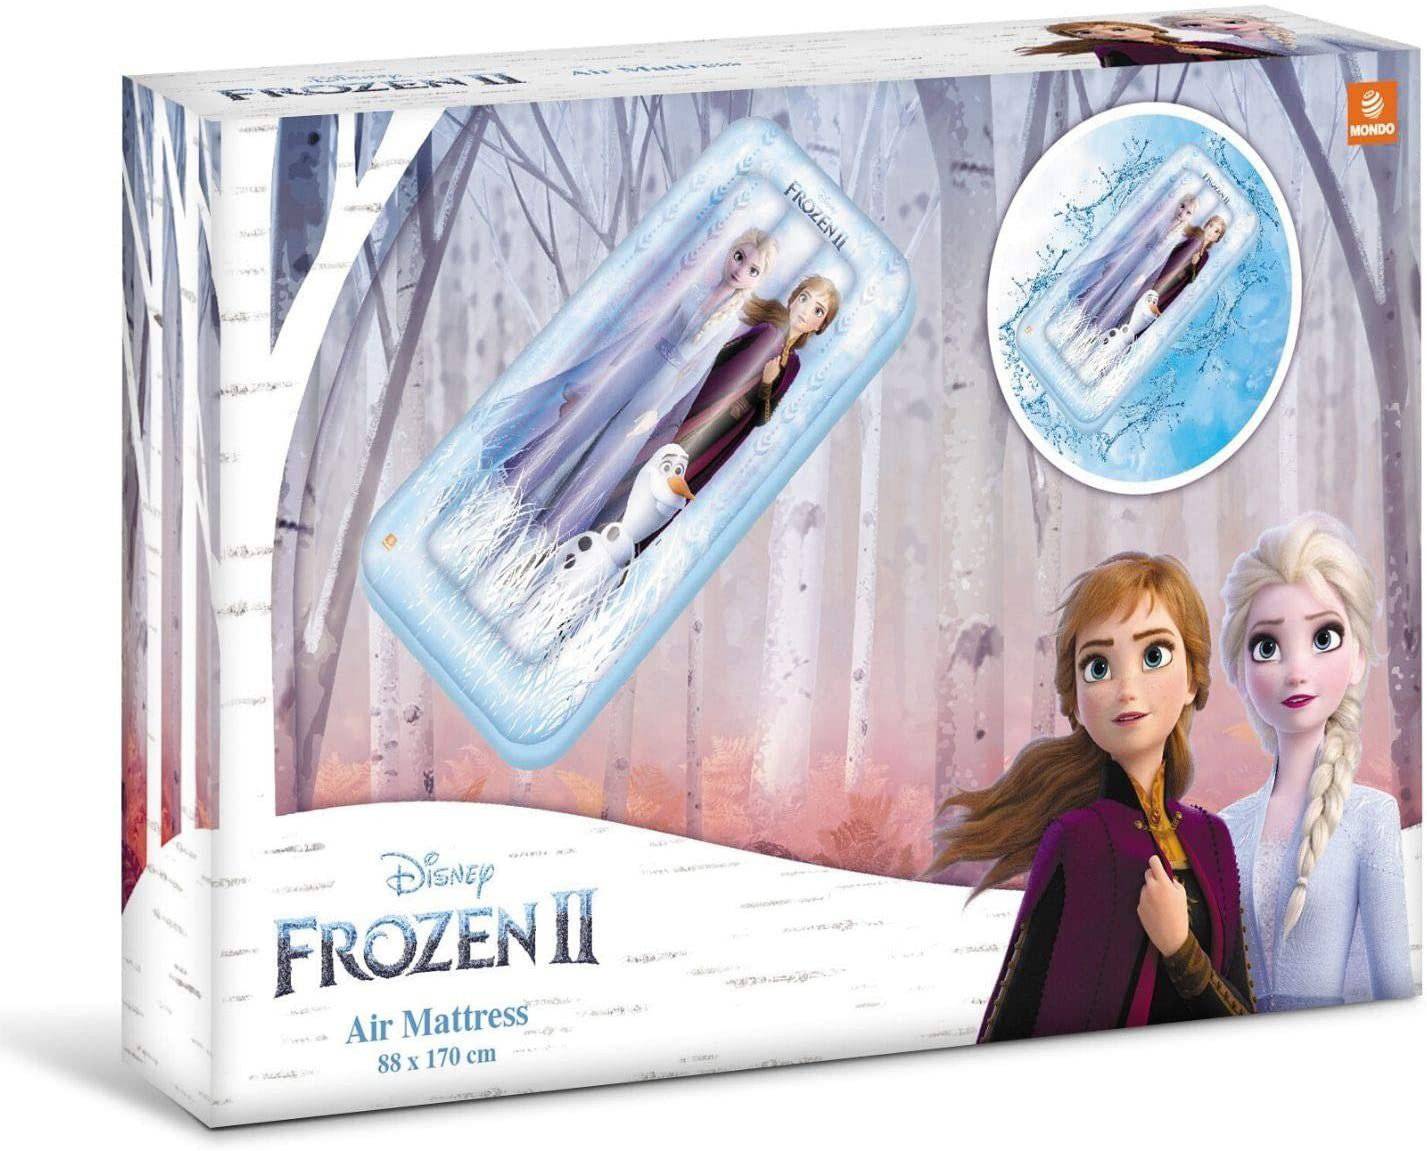 Air Matress Mondo Disney Frozen II - Albagame